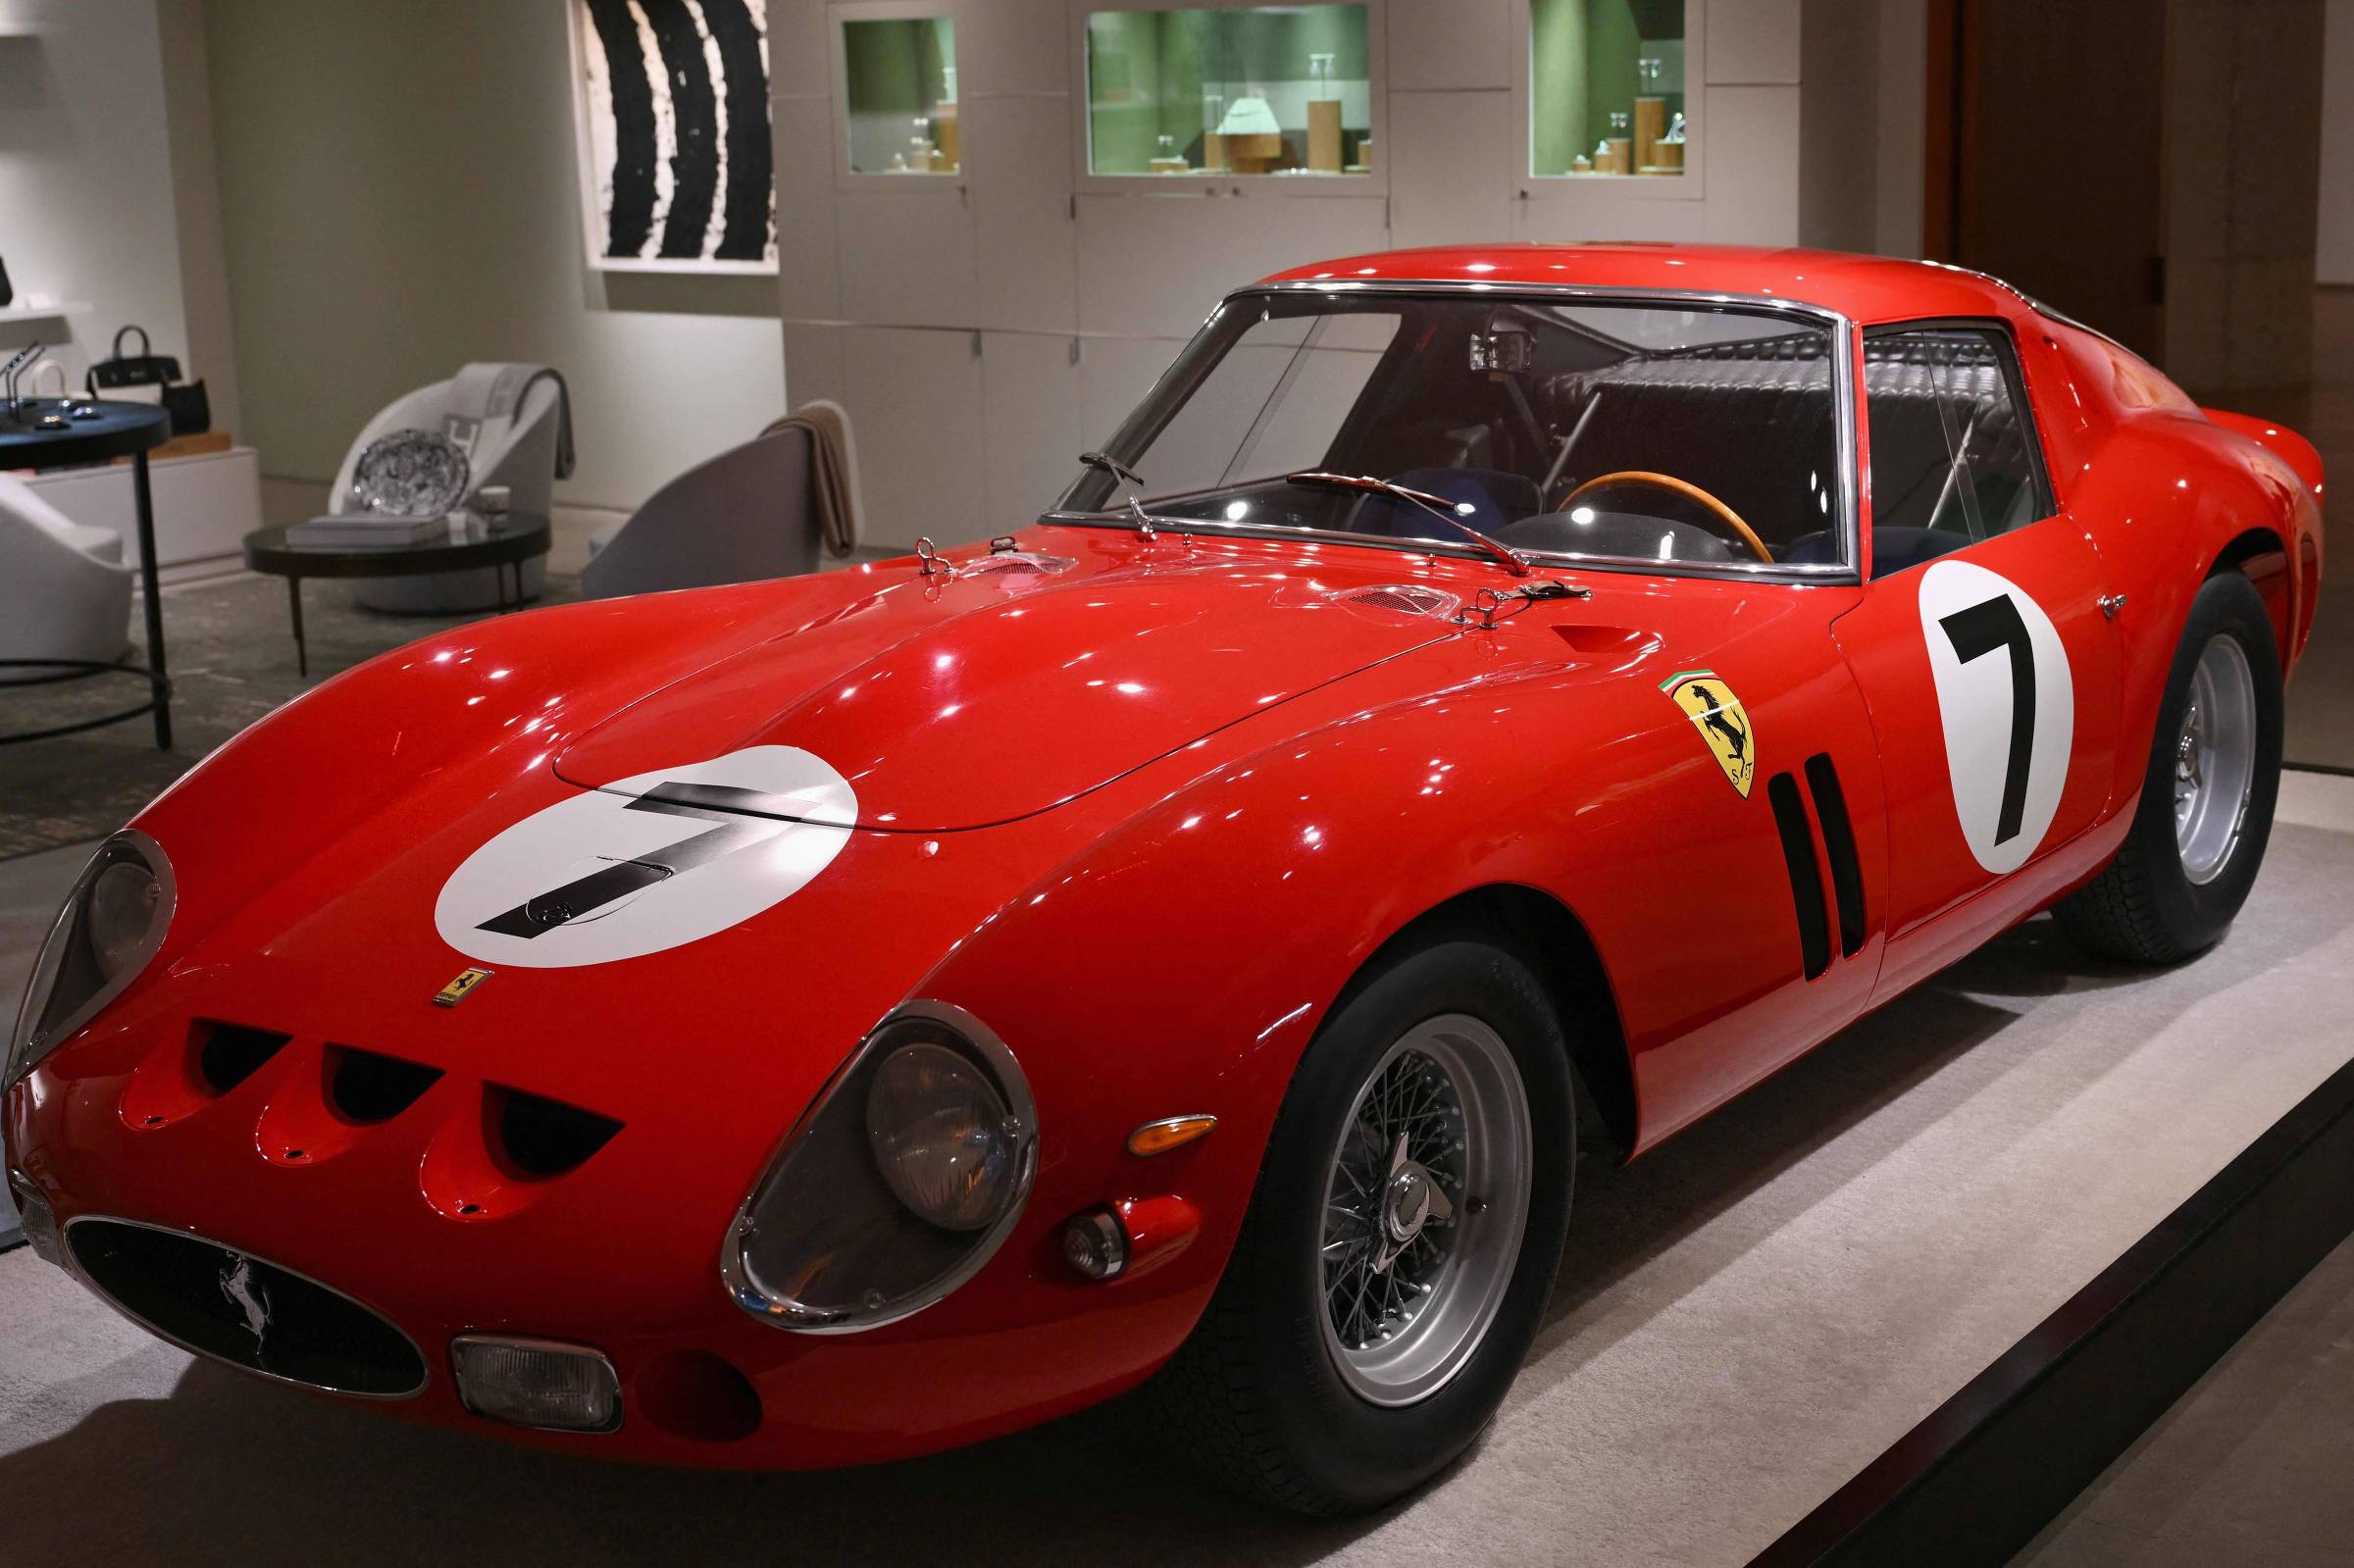 Ferrari de 1962 é leiloada por US$ 51,7 milhões, segundo maior valor entre carros clássicos; veja fotos